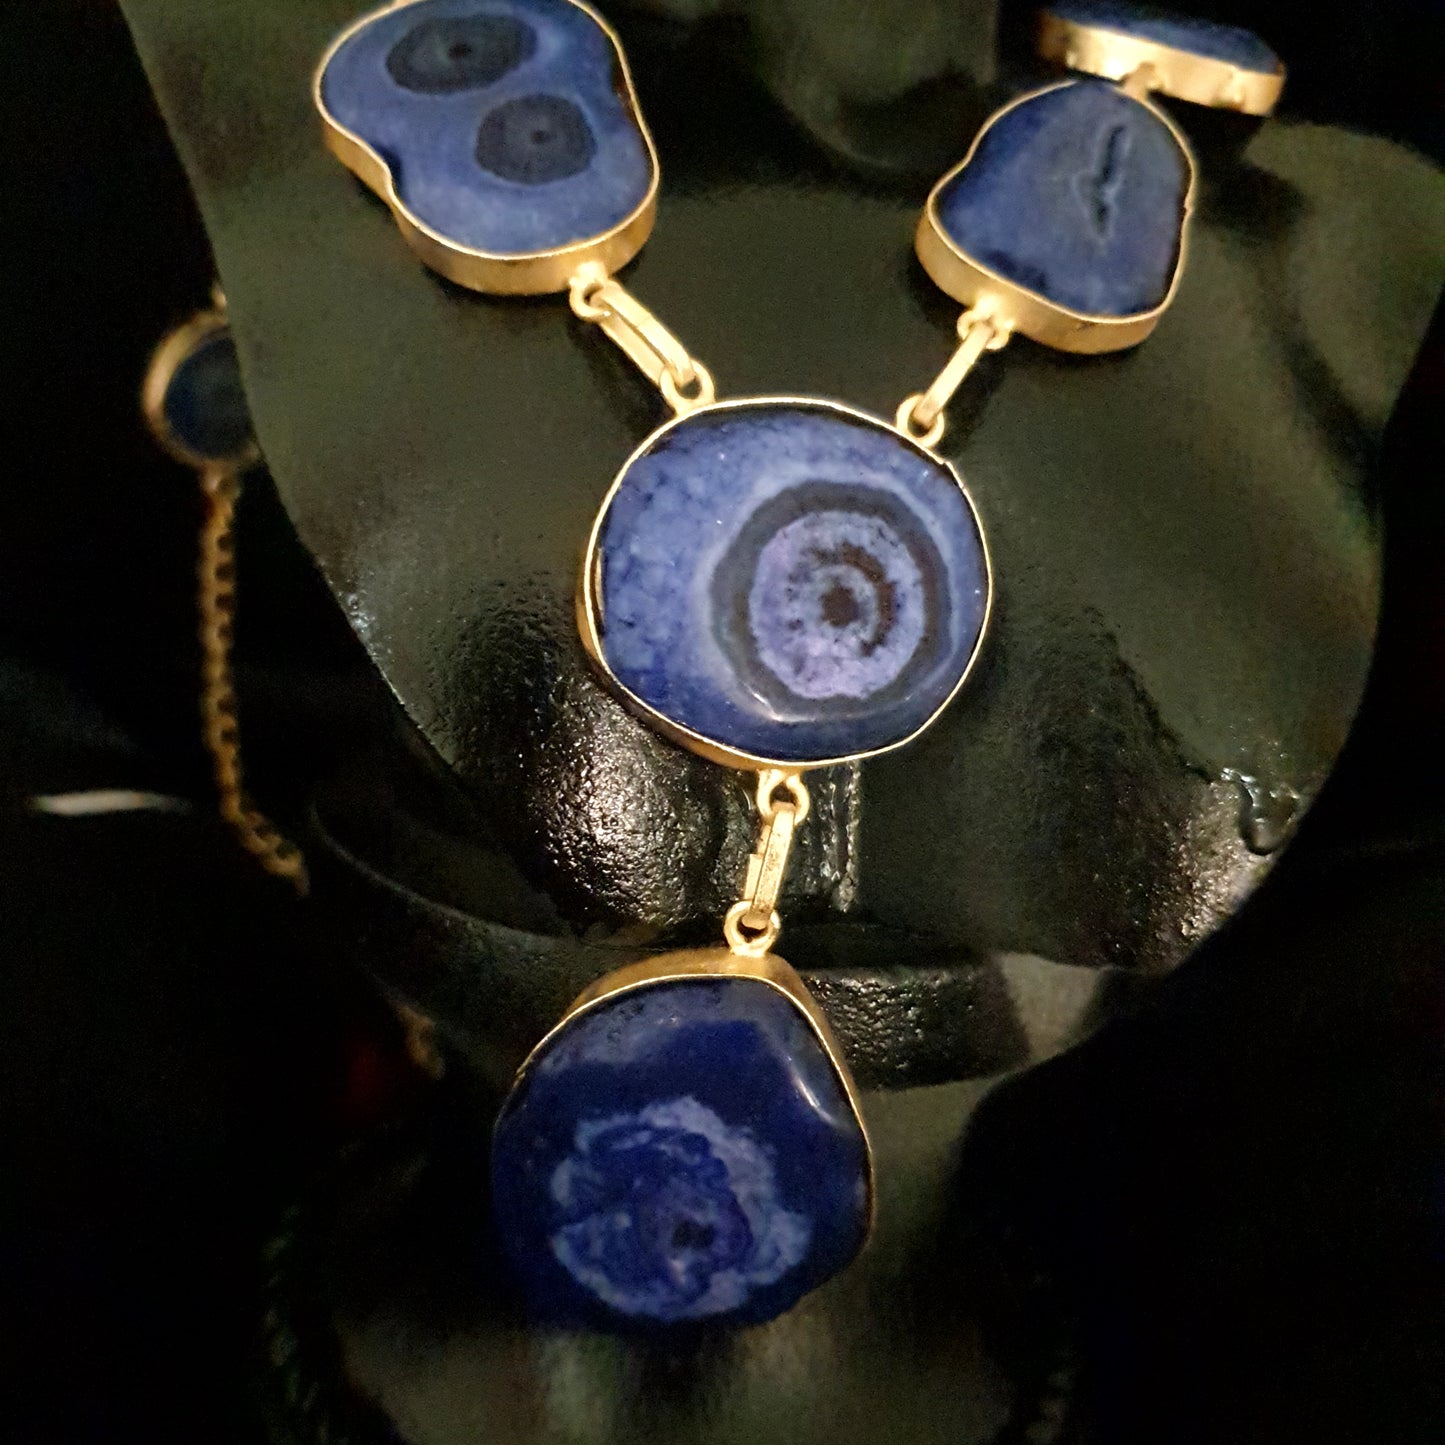 Blue Druzy Stone Necklace